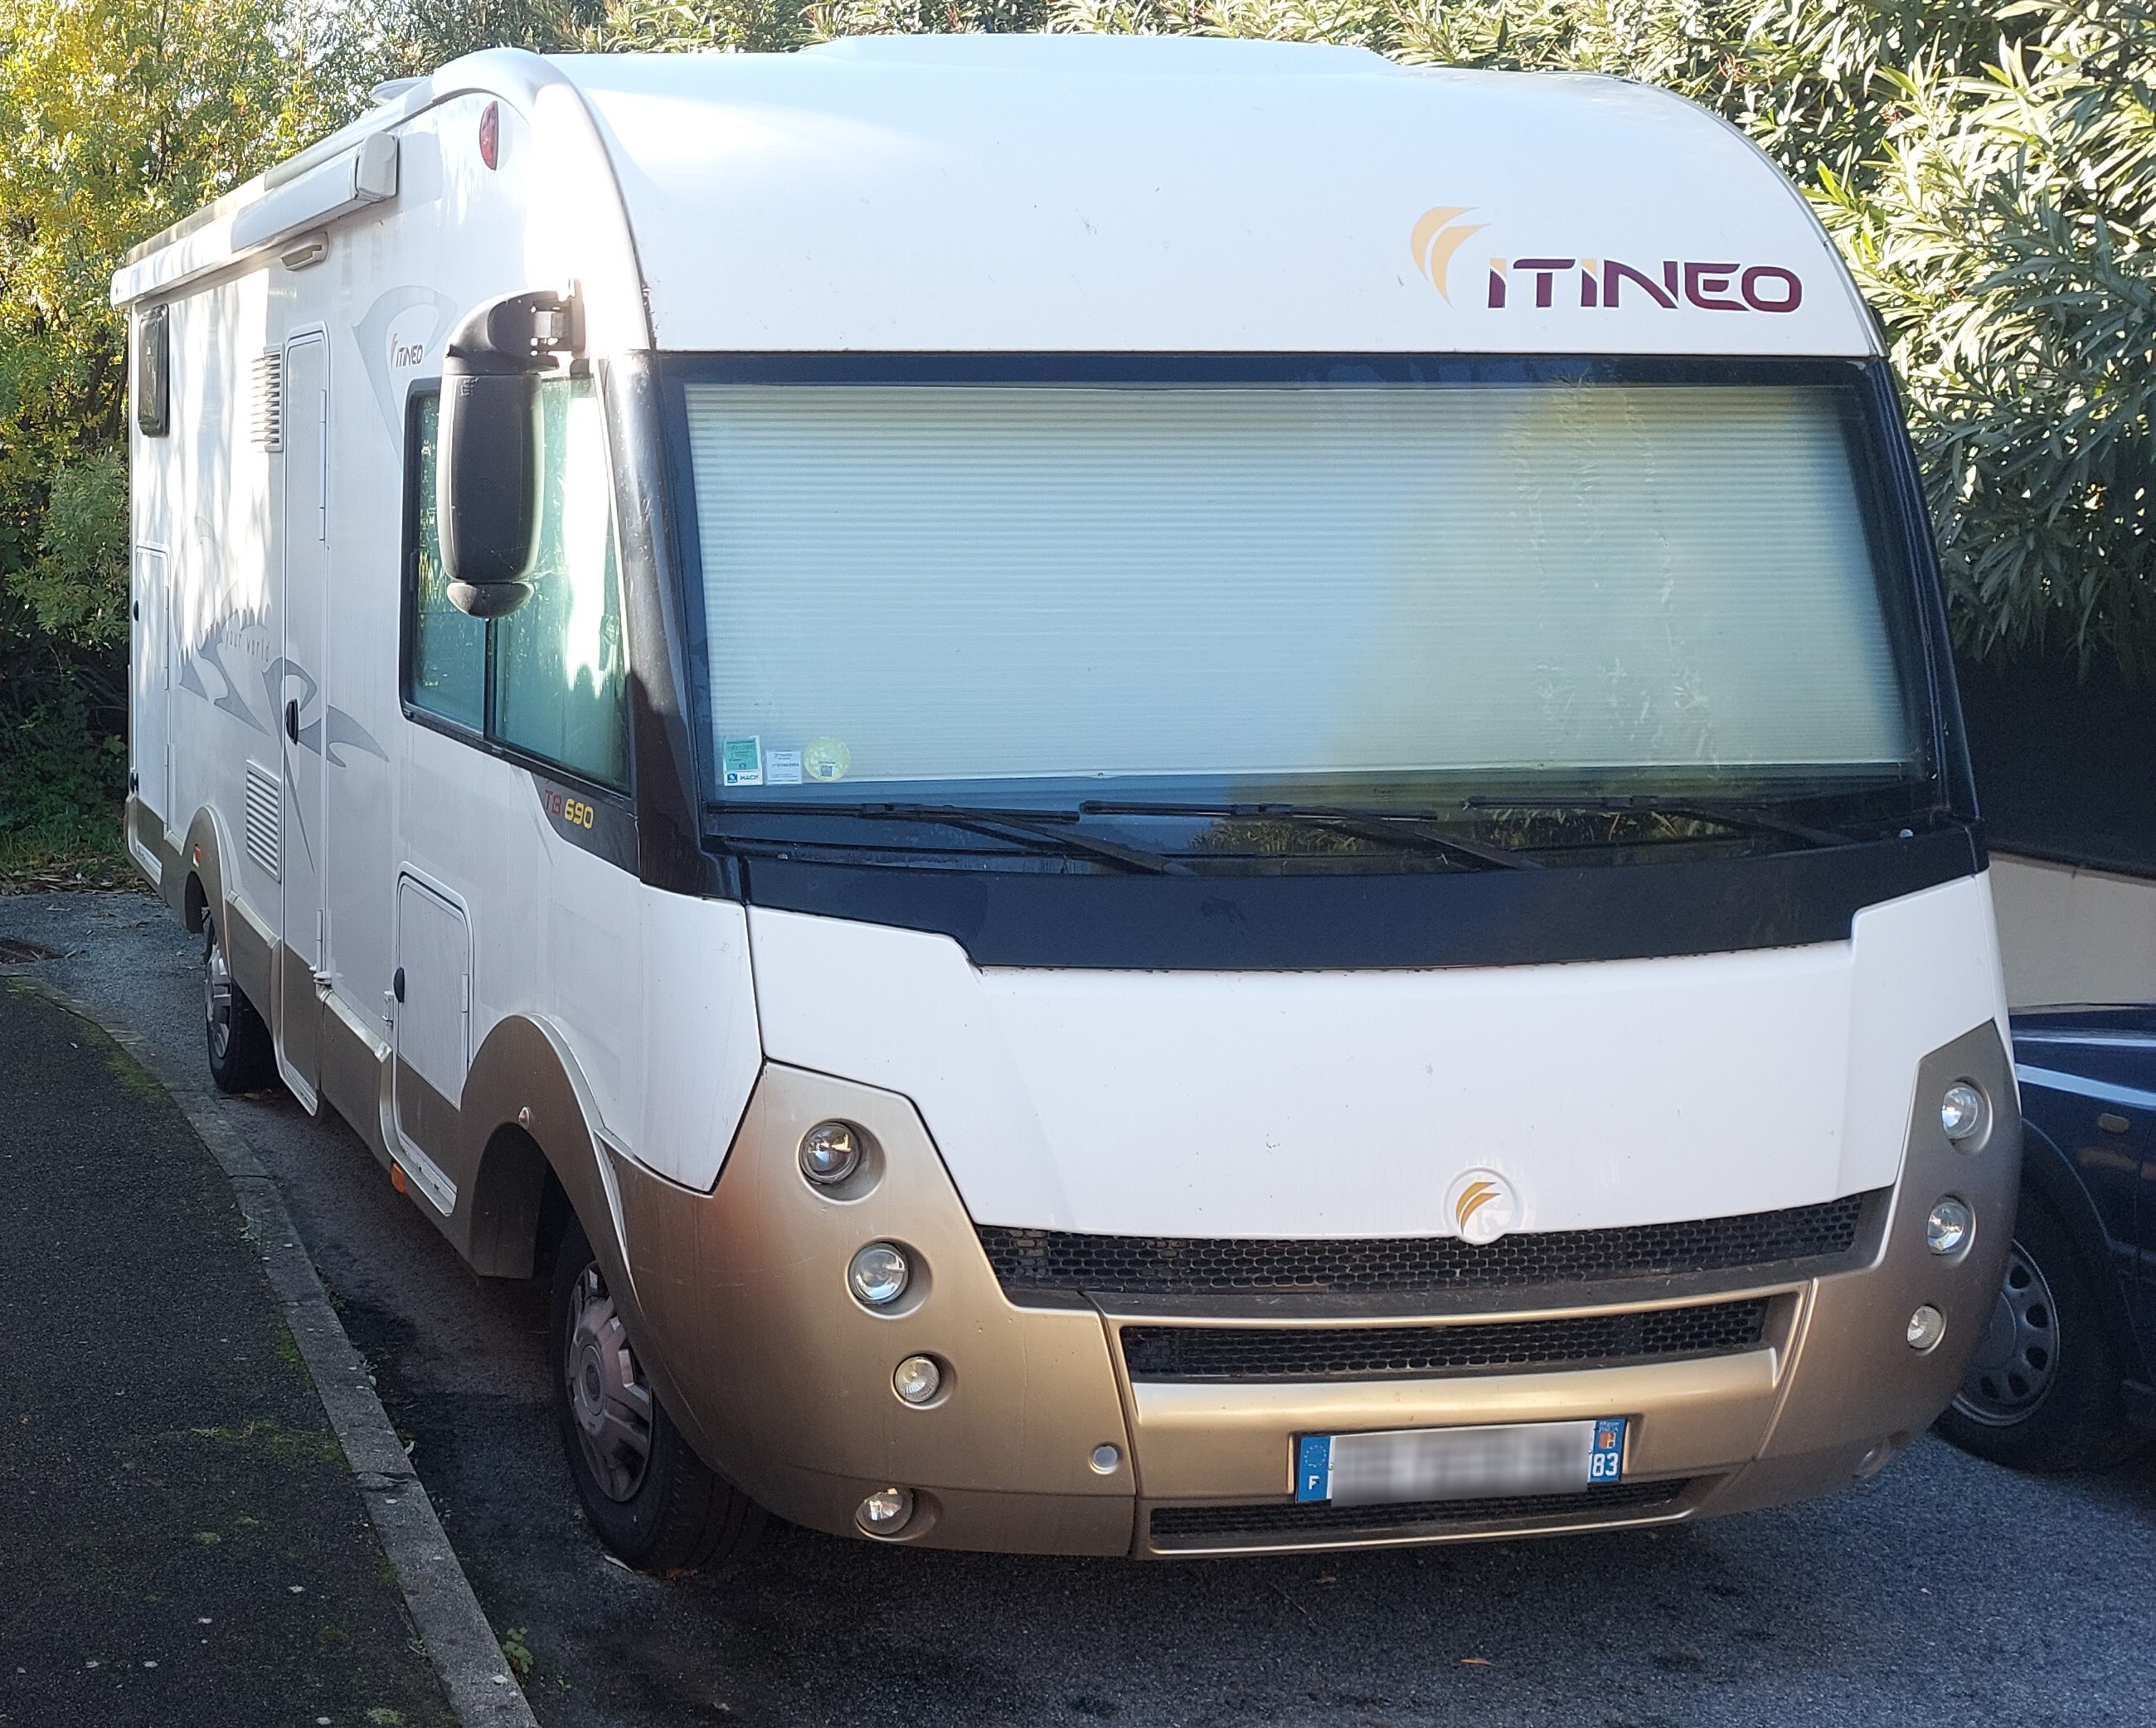 FIAT DUCATO ITINEO TB 690 / 2.3L 130 CV (à vendre) T84u